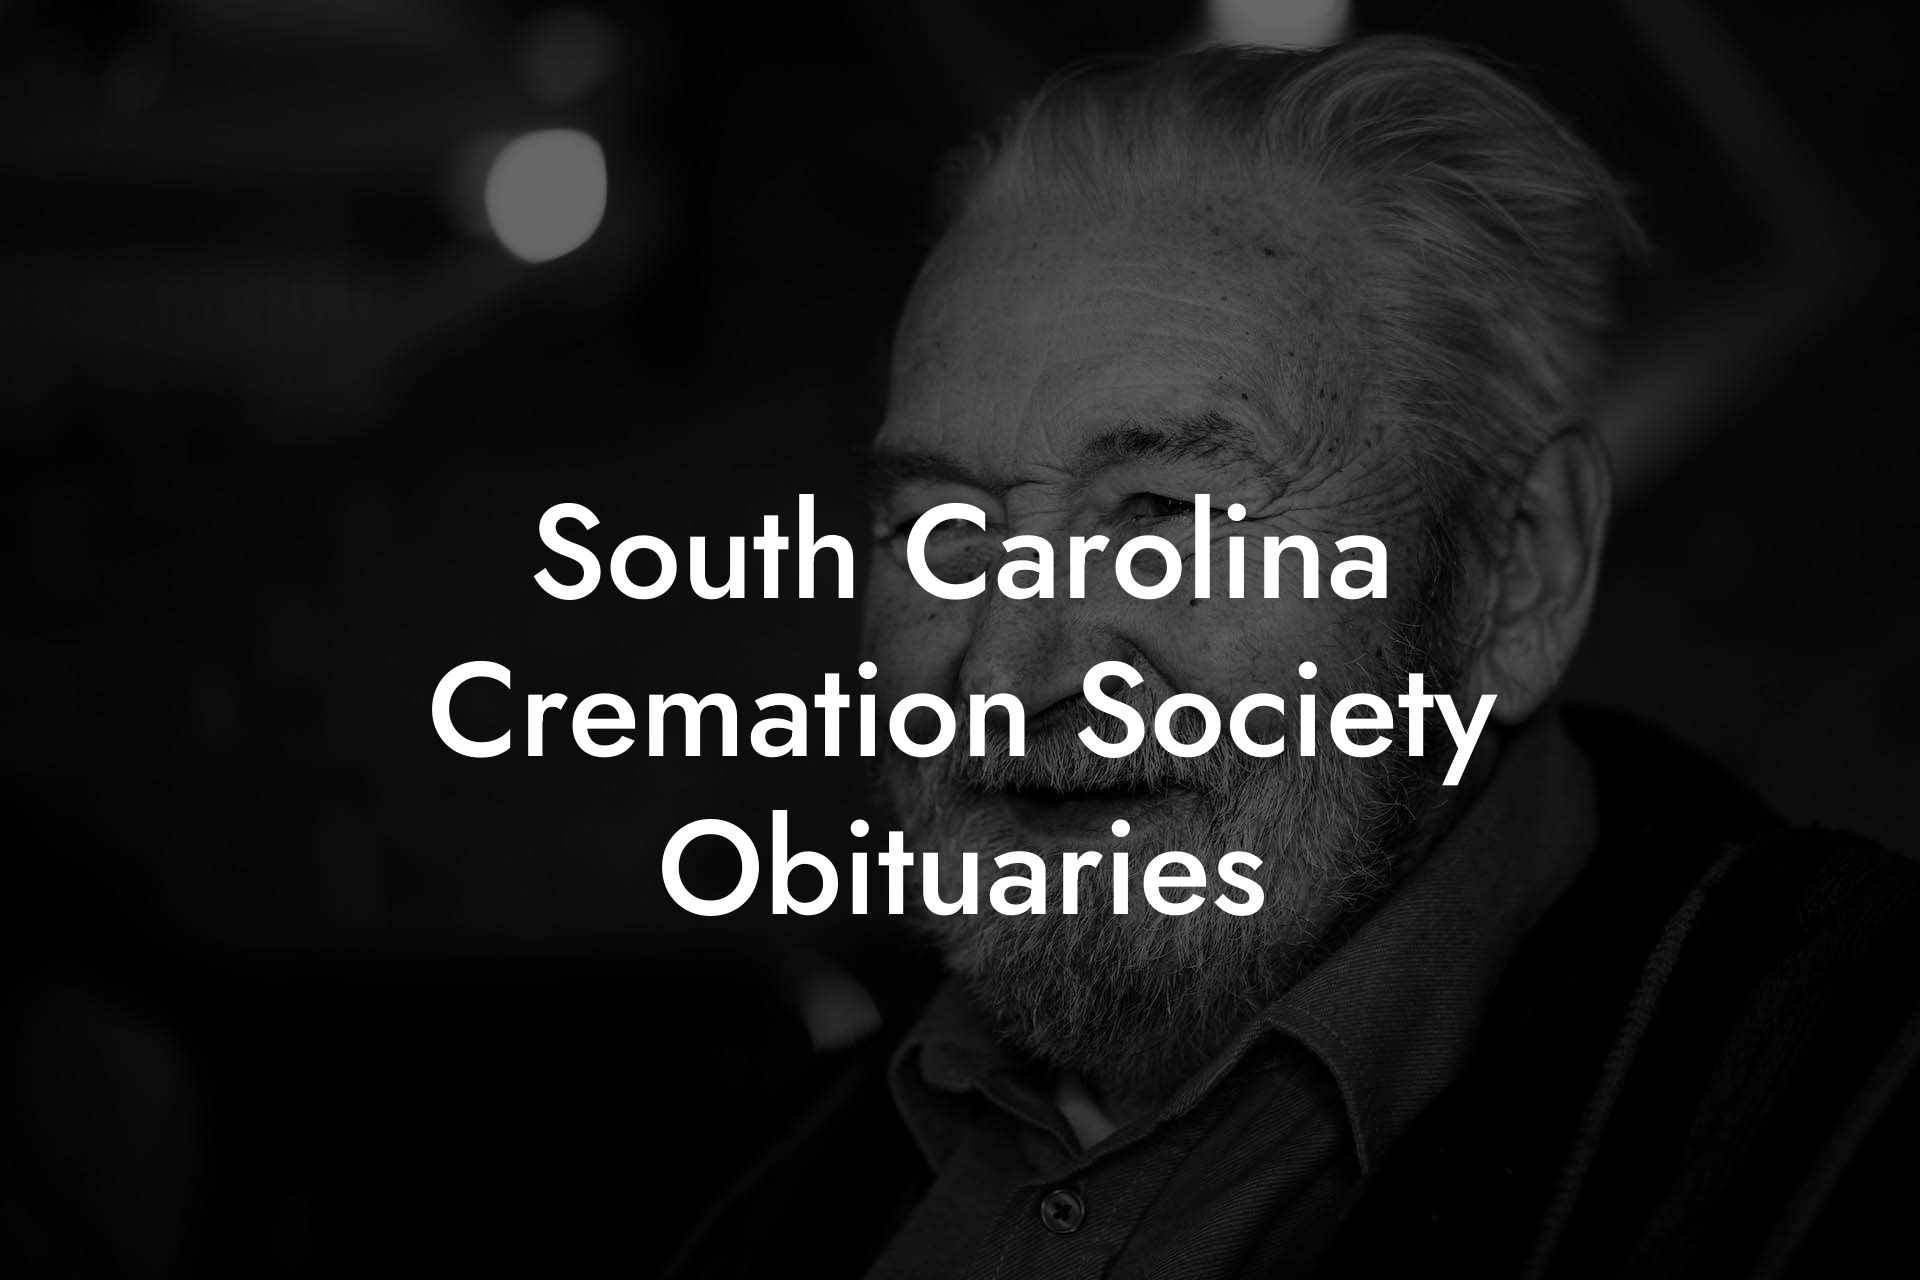 South Carolina Cremation Society Obituaries